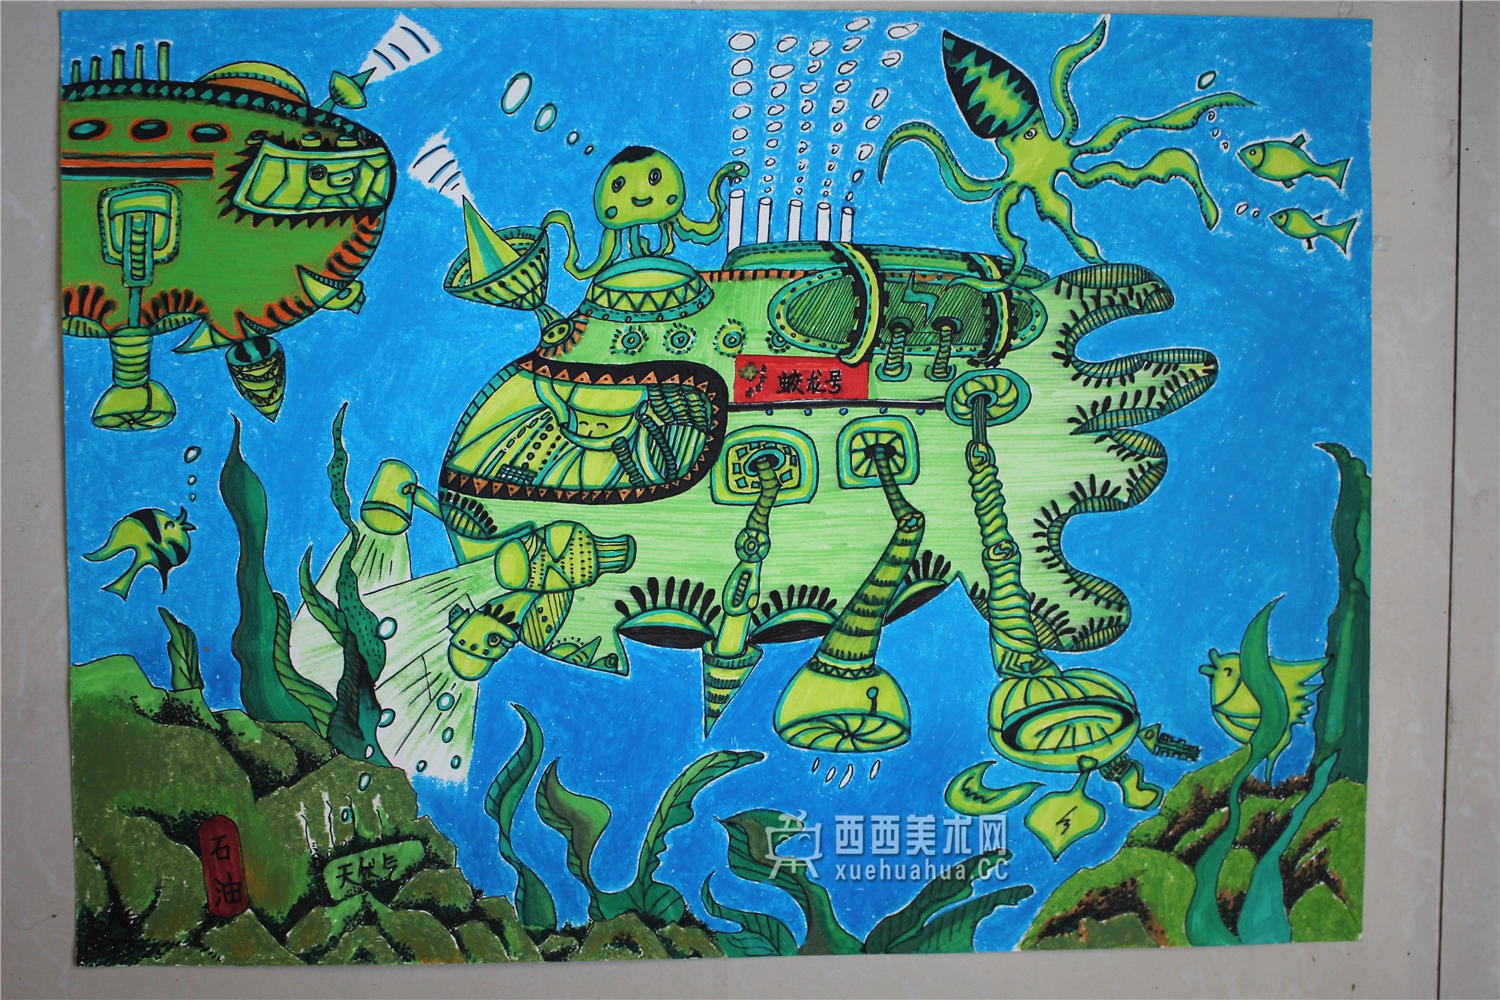 获奖儿童科幻画作品《“蛟龙号”海底资源探测器》欣赏(1)